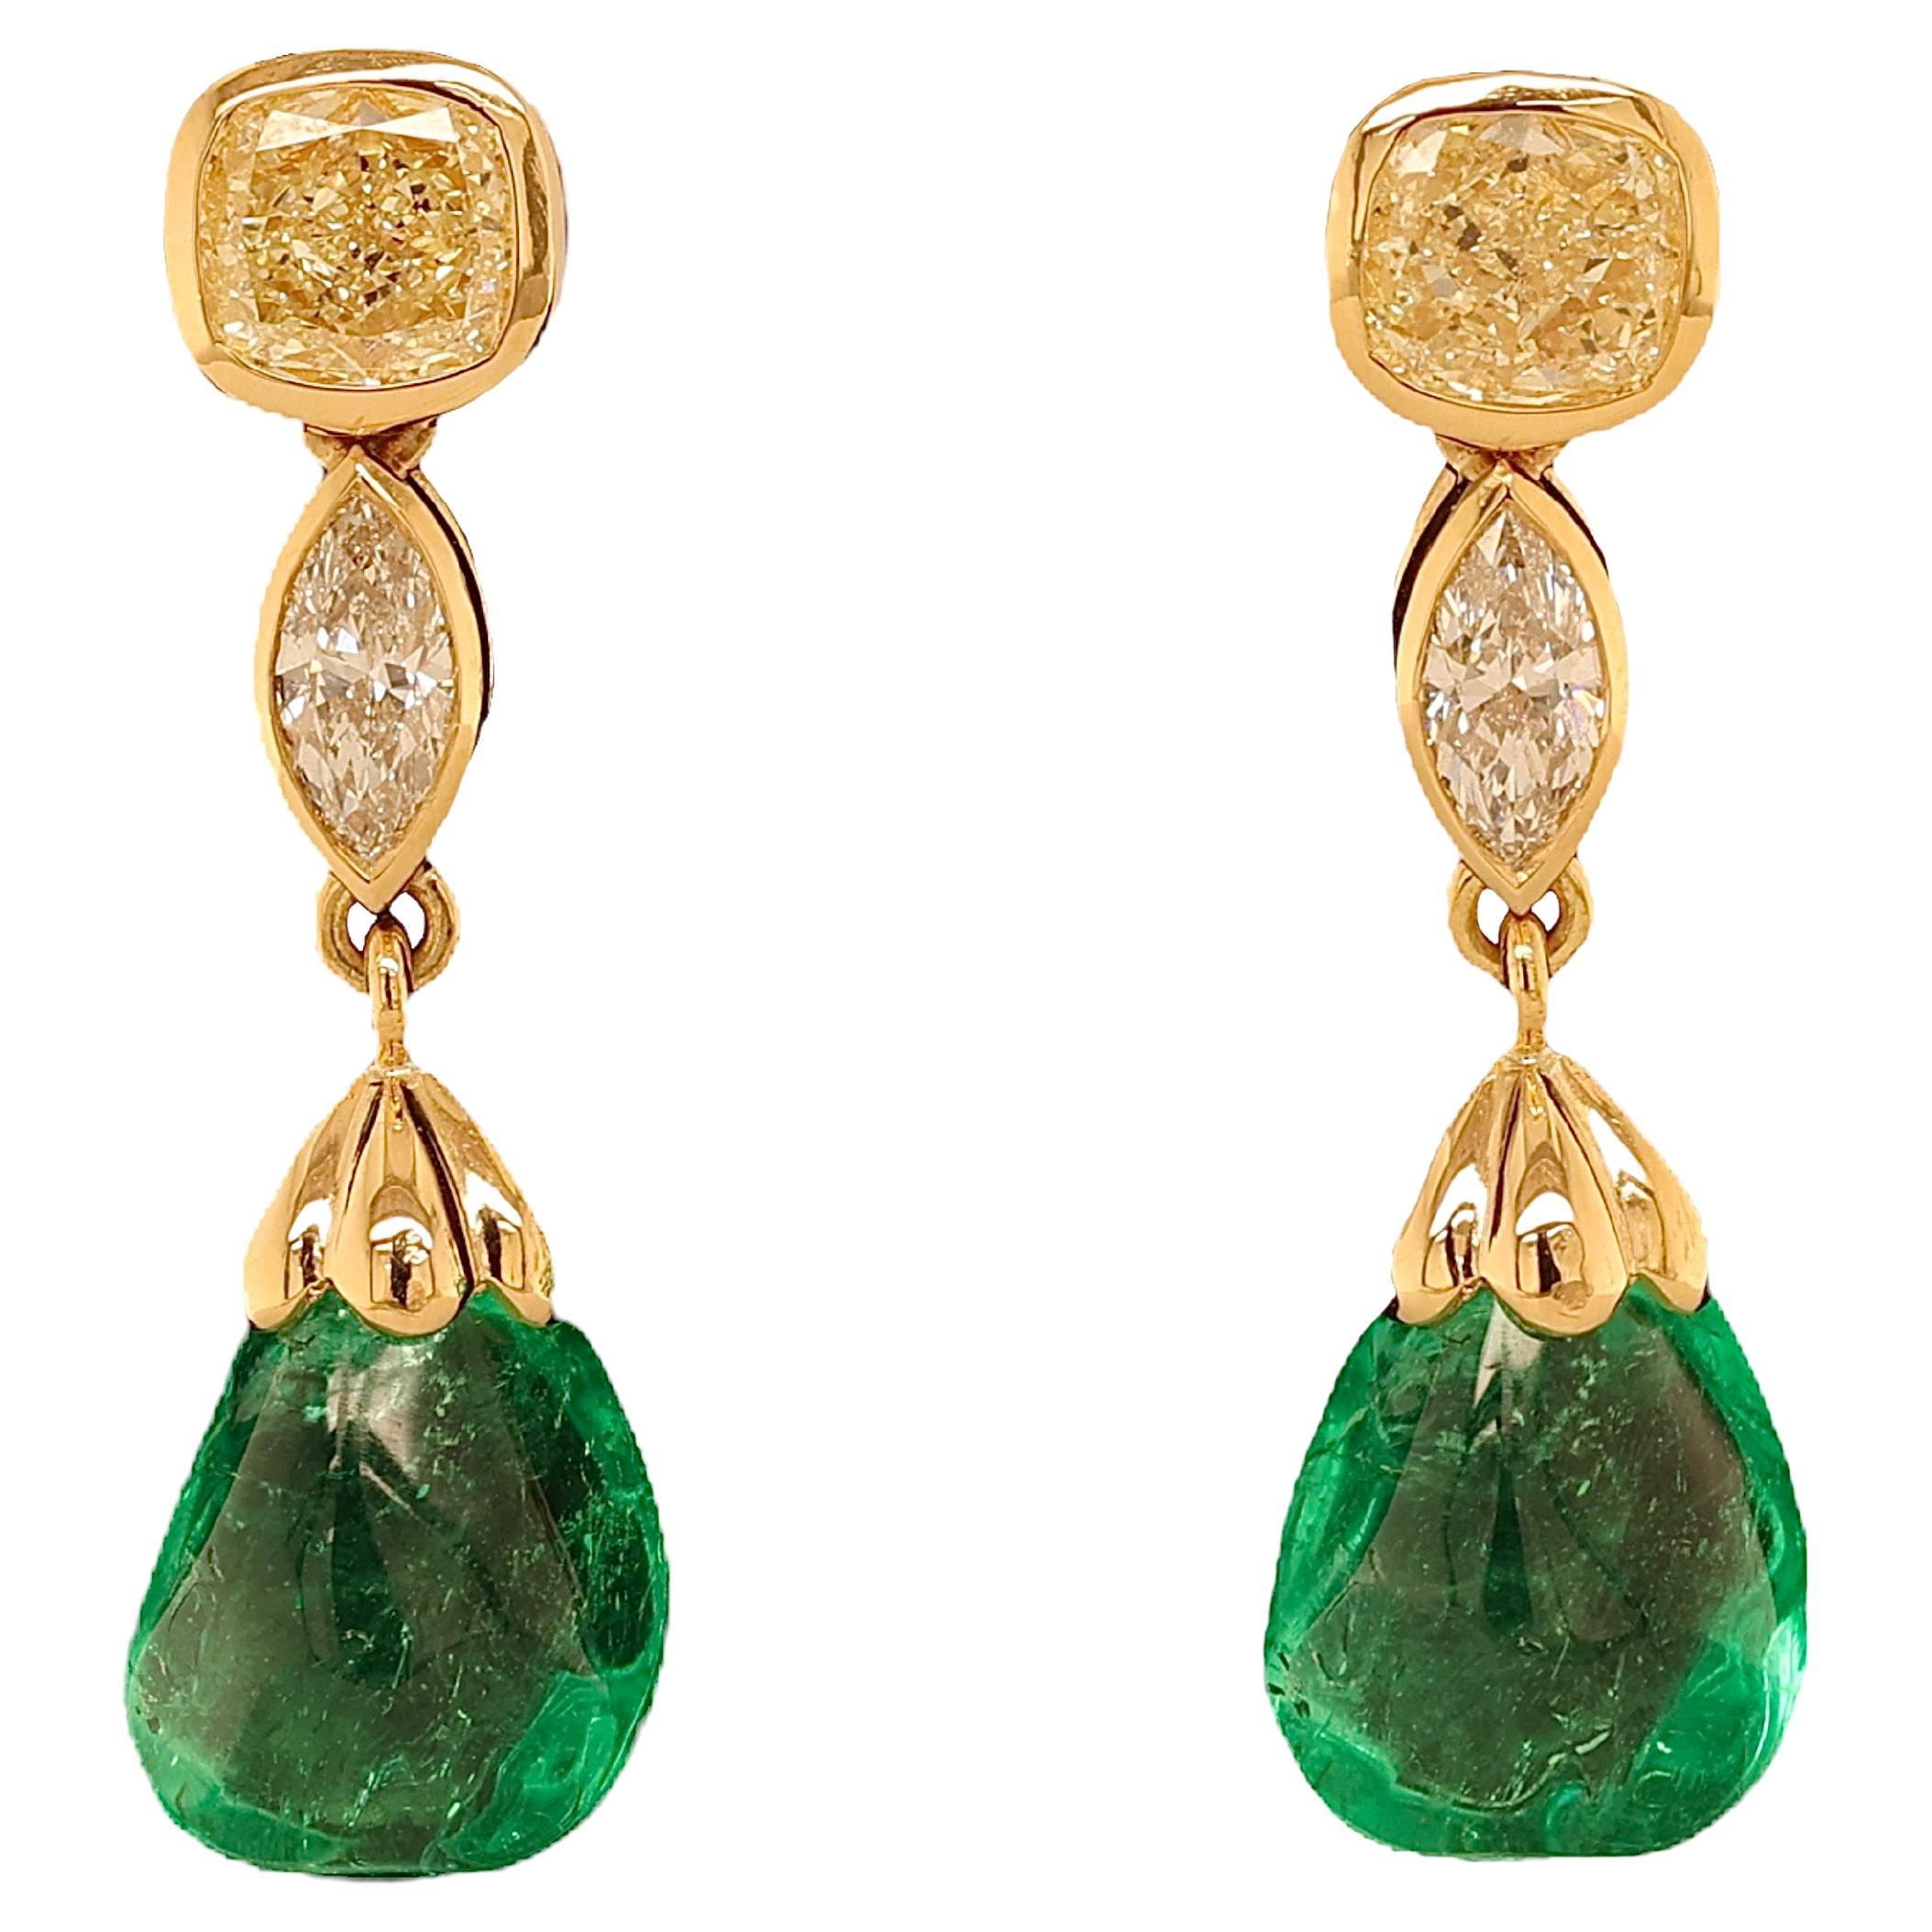 18 Kt, Earrings Minor Colombian 5.39 & 5.14ct Emeralds, Diamonds, CGL Certified